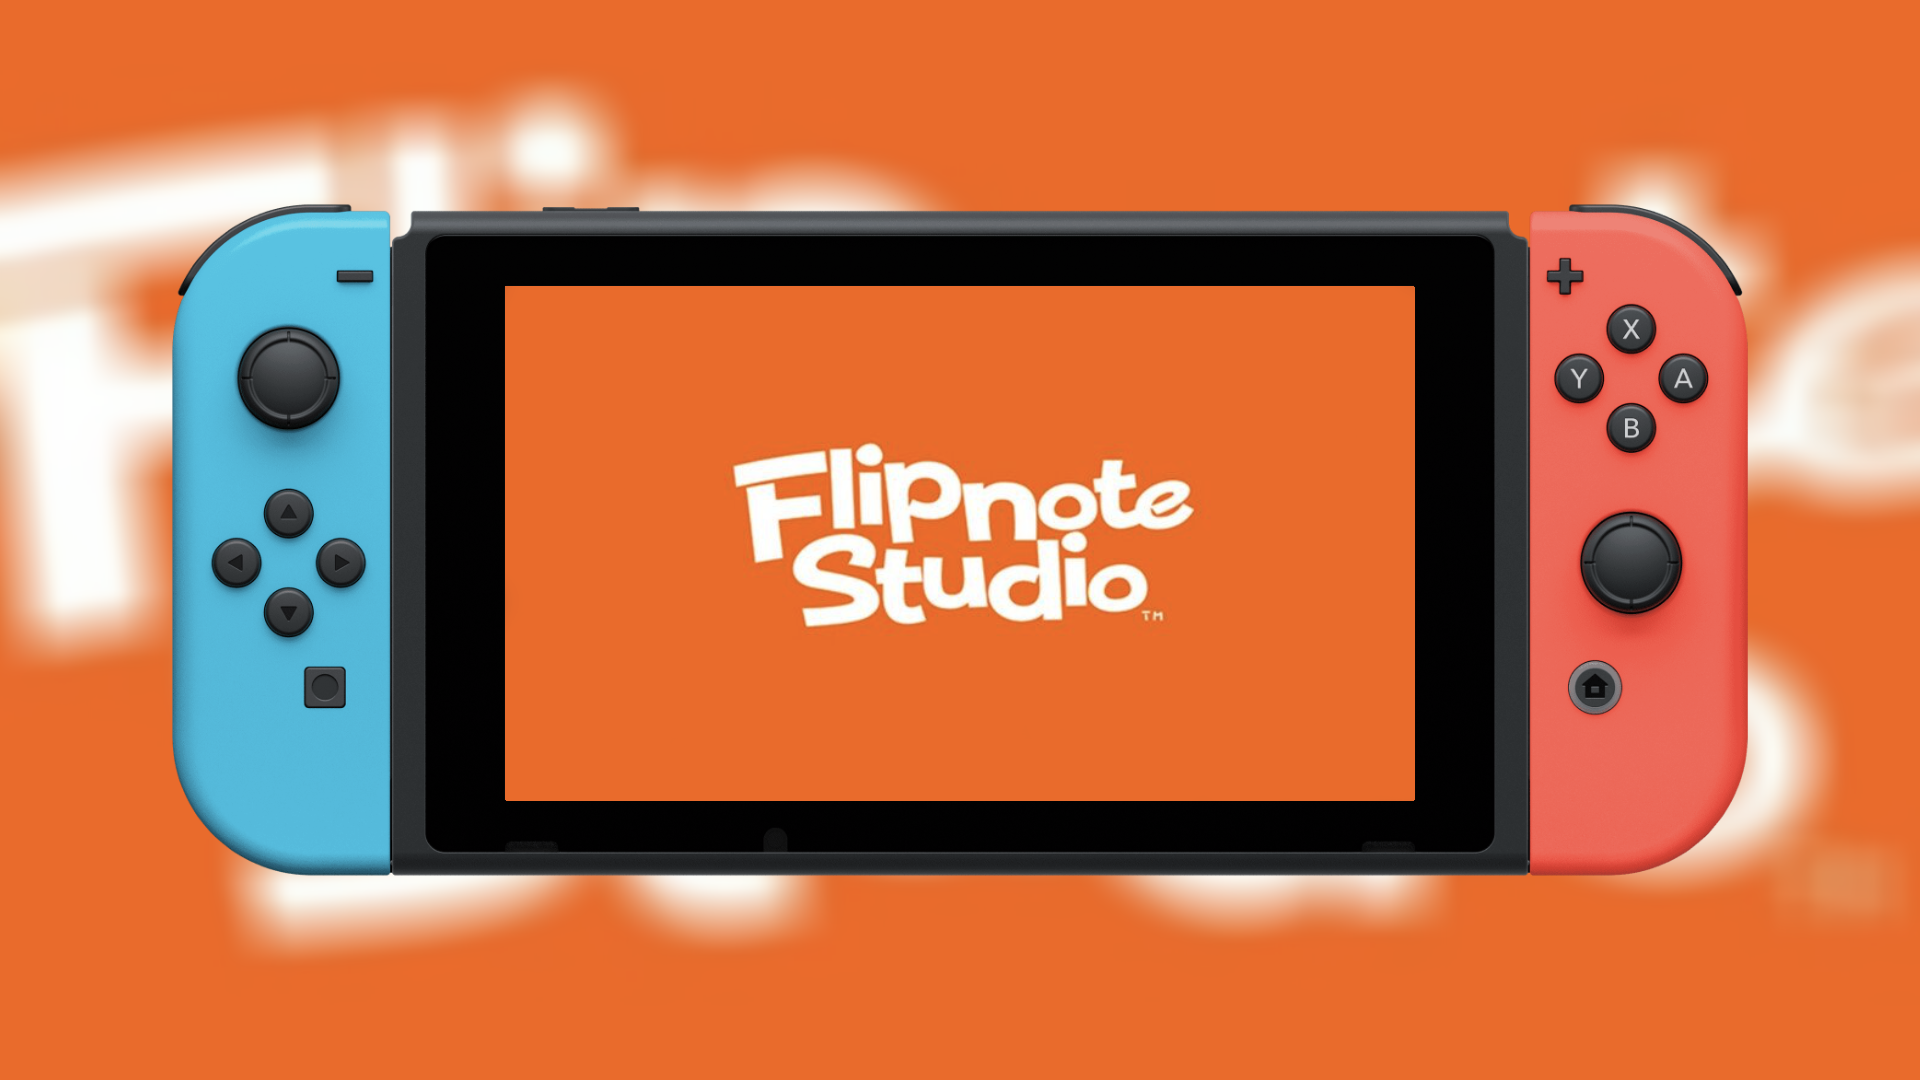 flipnote studio dsi on 3ds